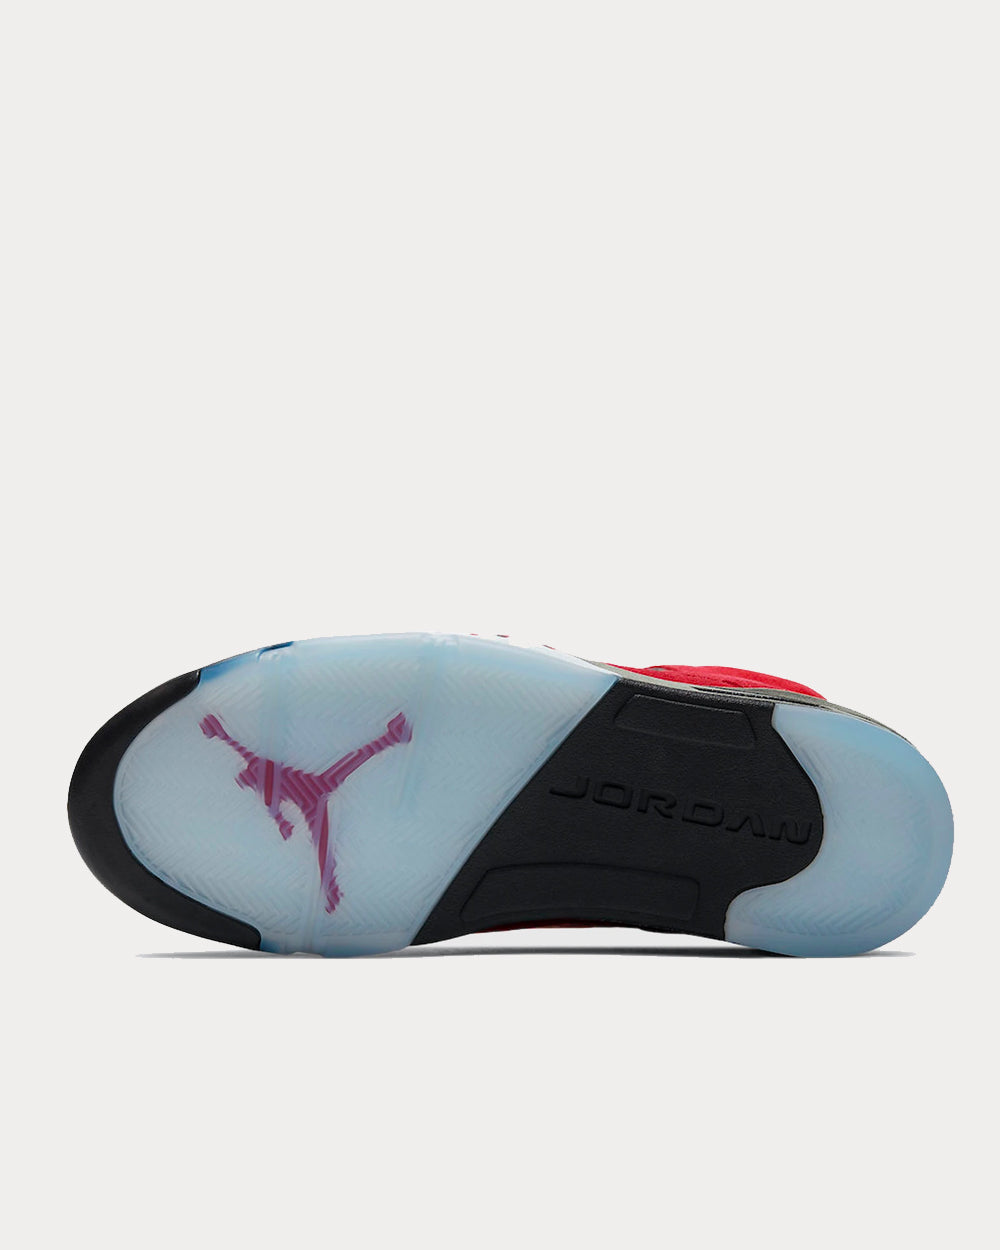 Jordan - Air Jordan 5 Retro Varsity Red / Black / White High Top Sneakers